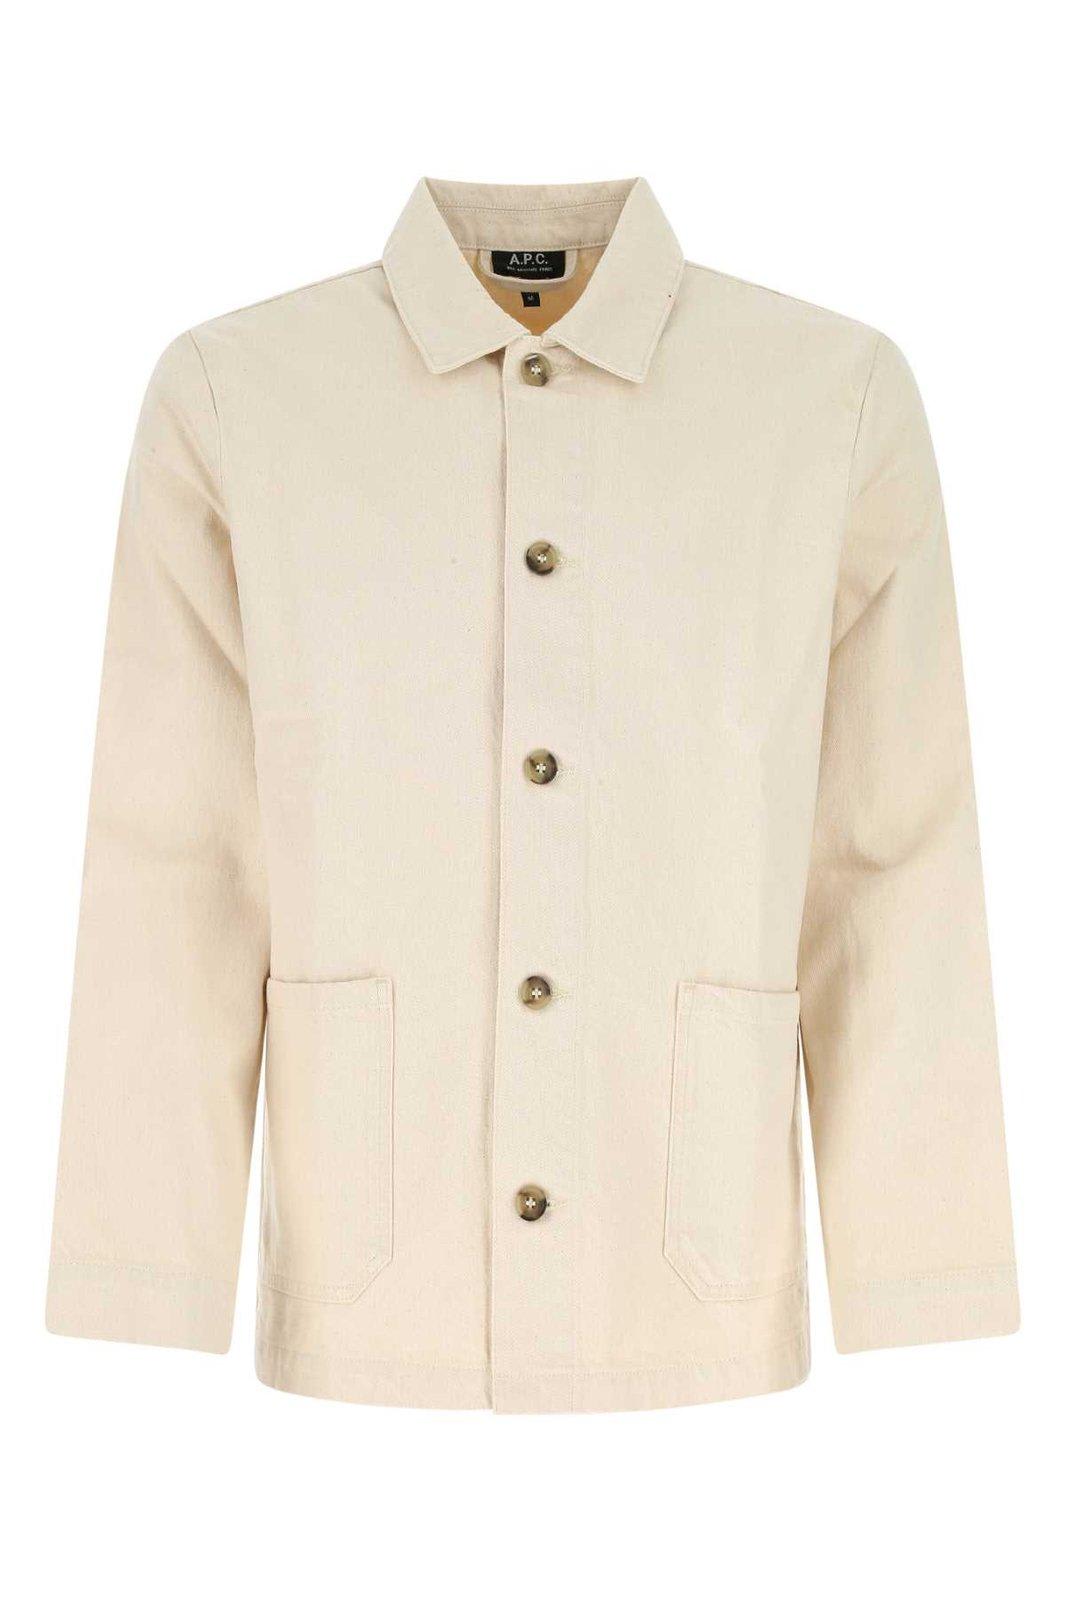 A.P.C. Button-up Shirt Jacket